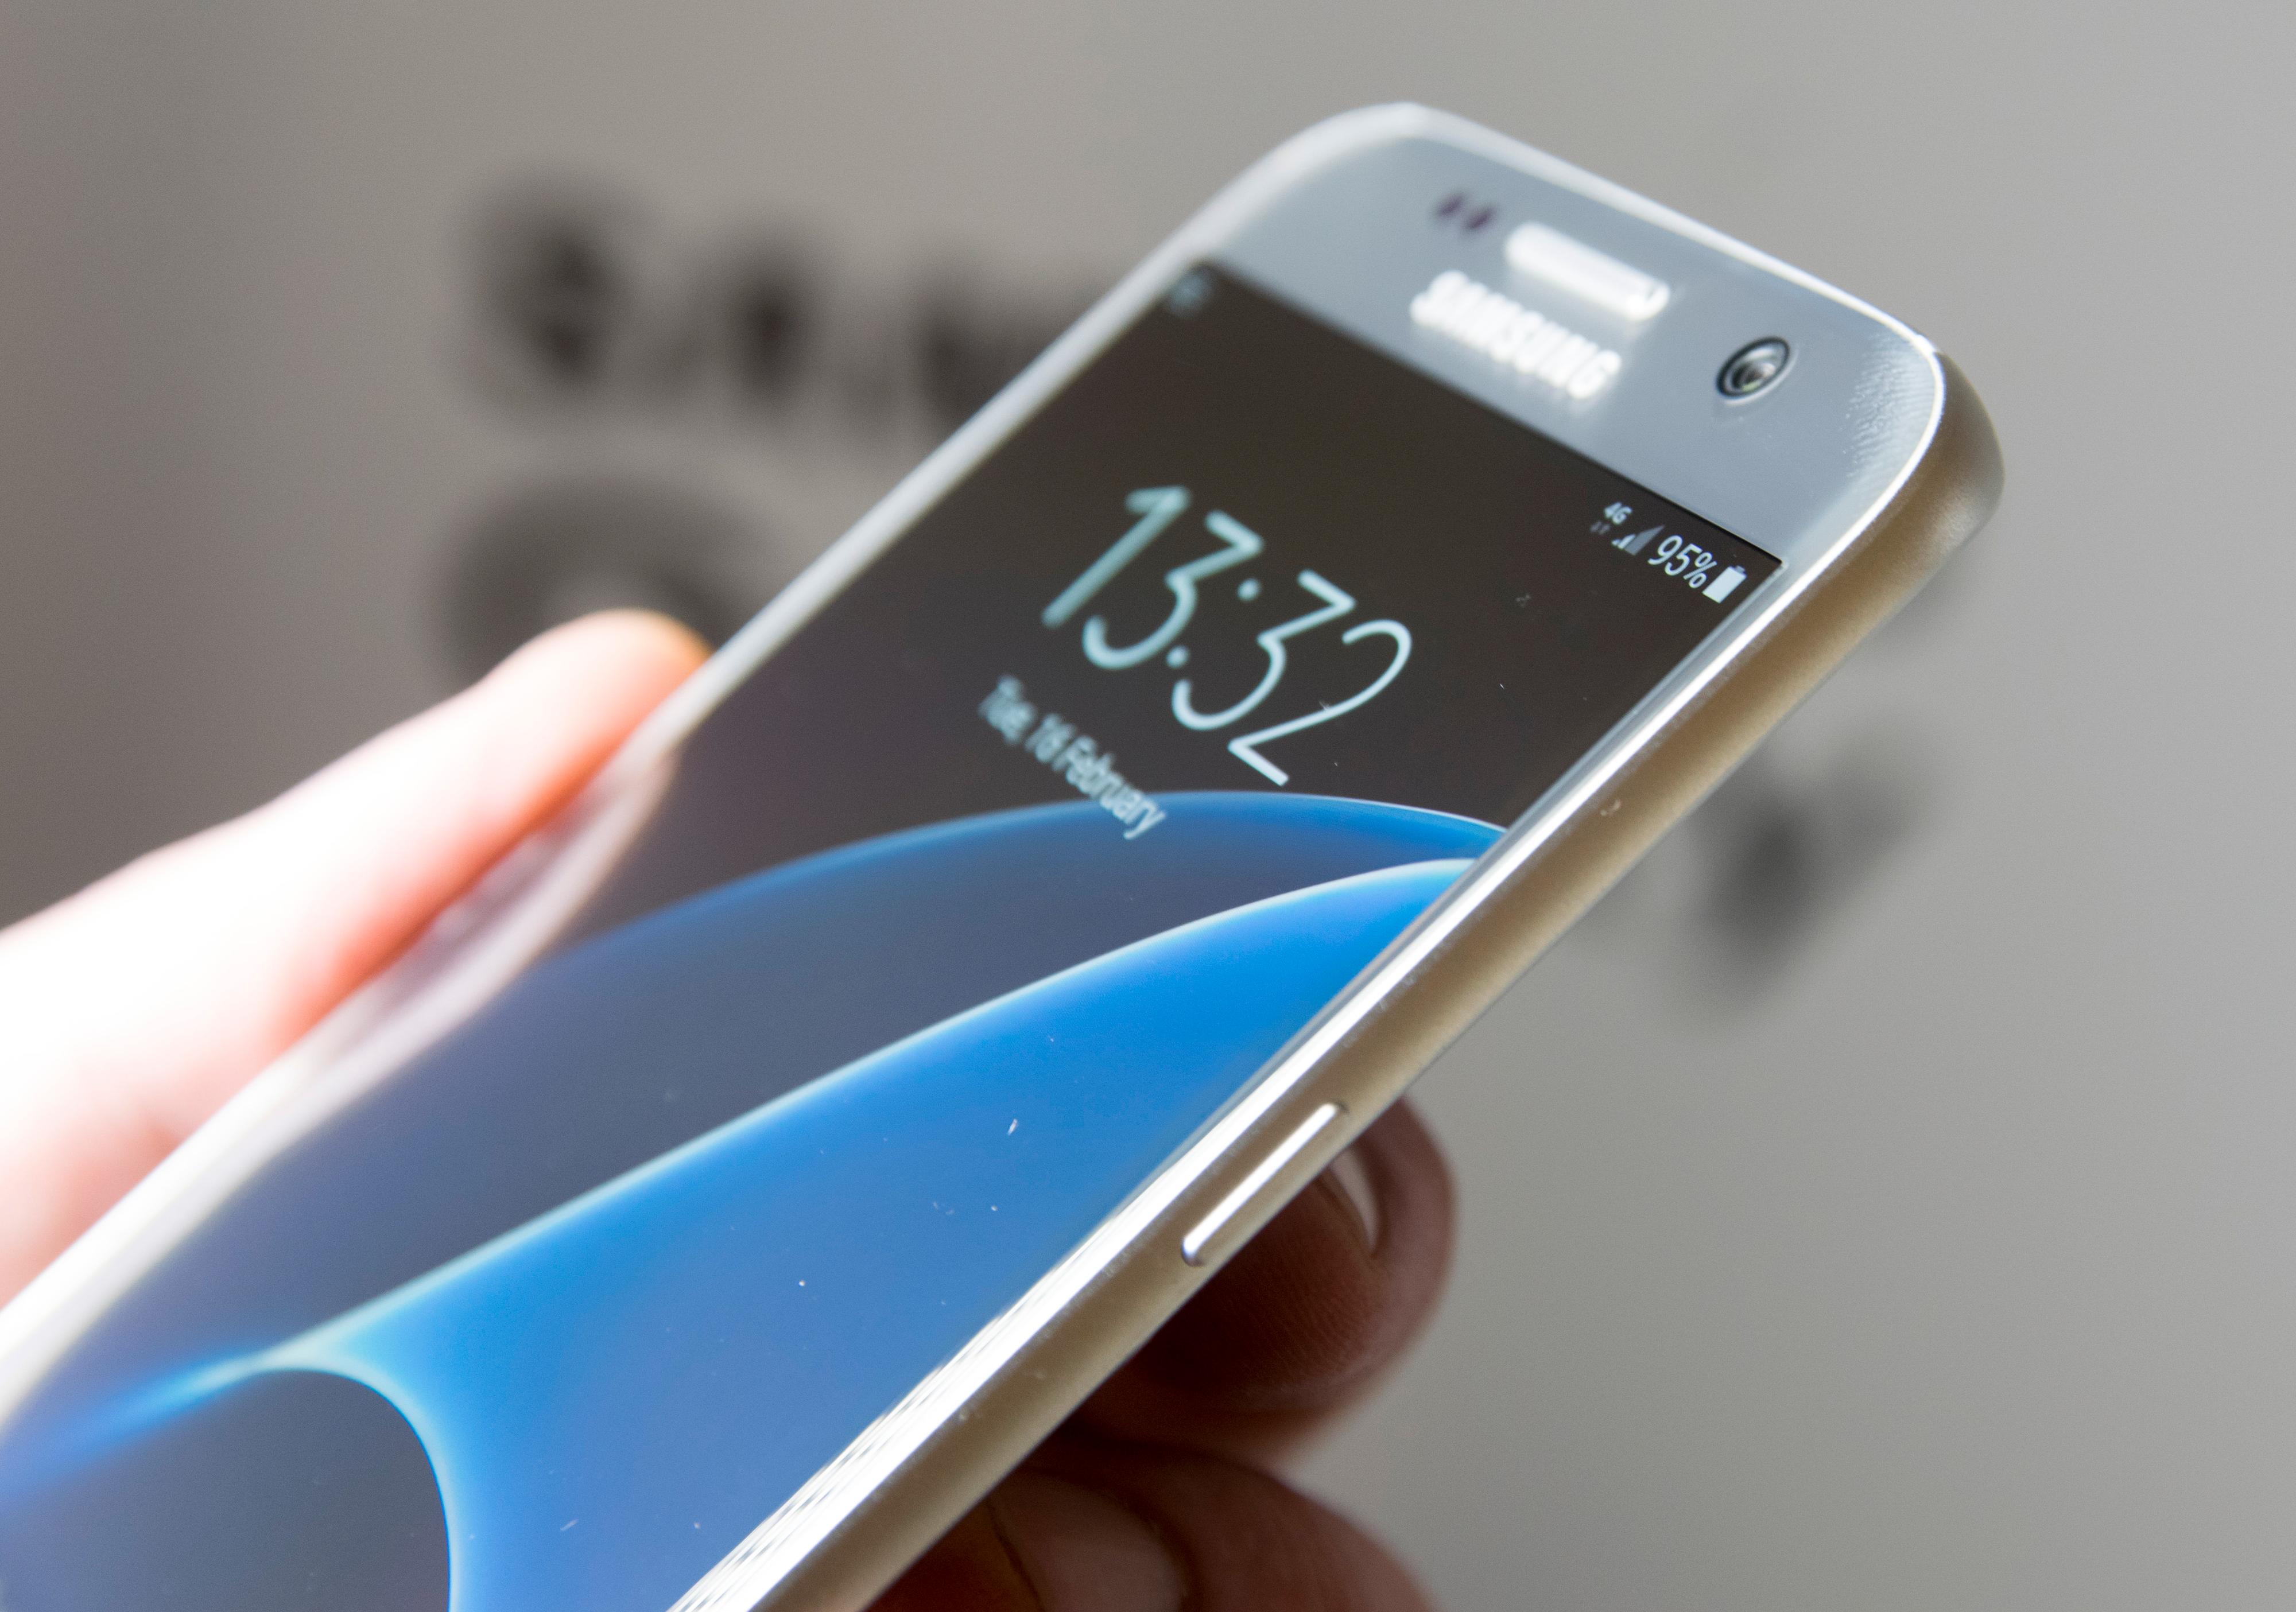 En flat utgave av Galaxy S7 kommer også. Denne har litt mindre skjerm, og er uten de særegne kantbuene Edge-modellen har.